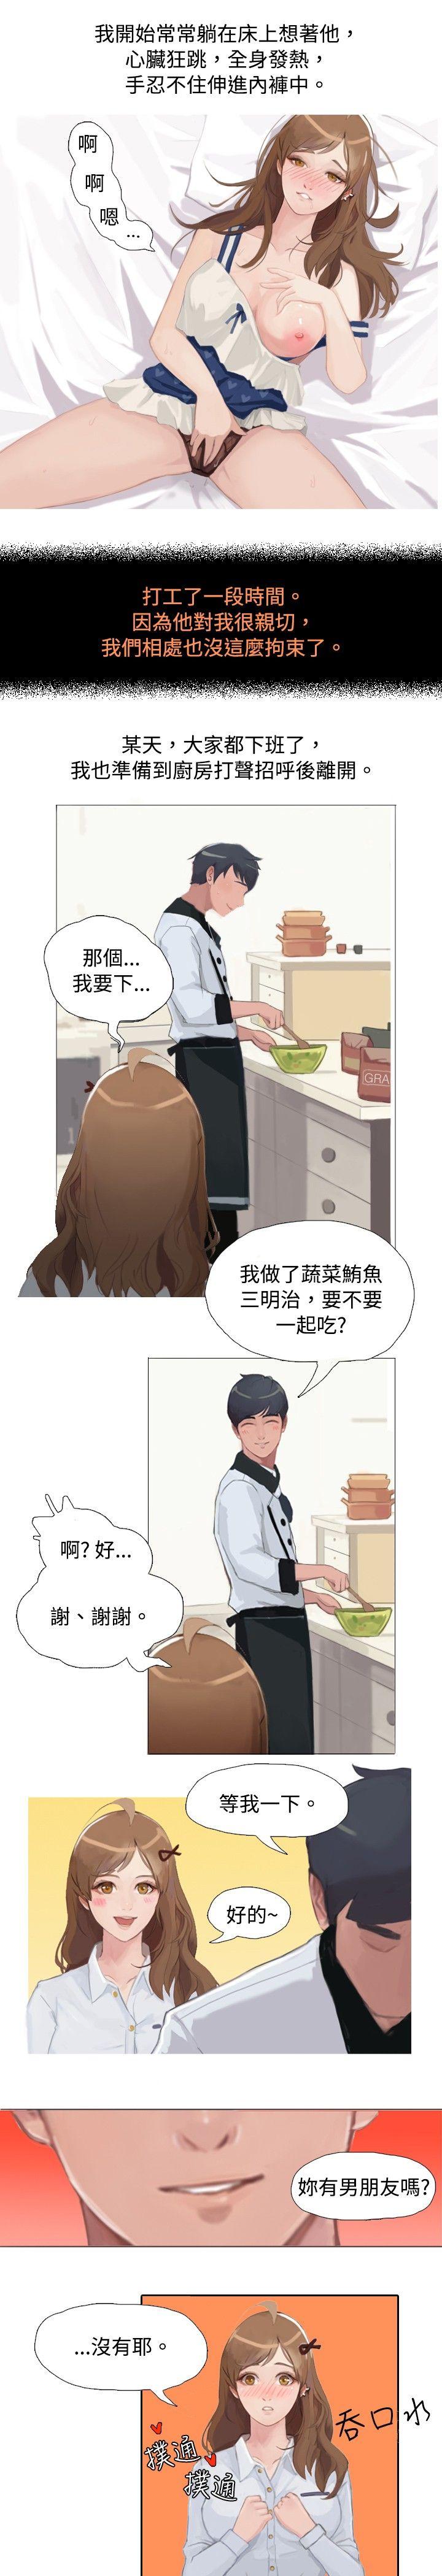 秘密Story  与型男主厨的花癡故事(上) 漫画图片4.jpg